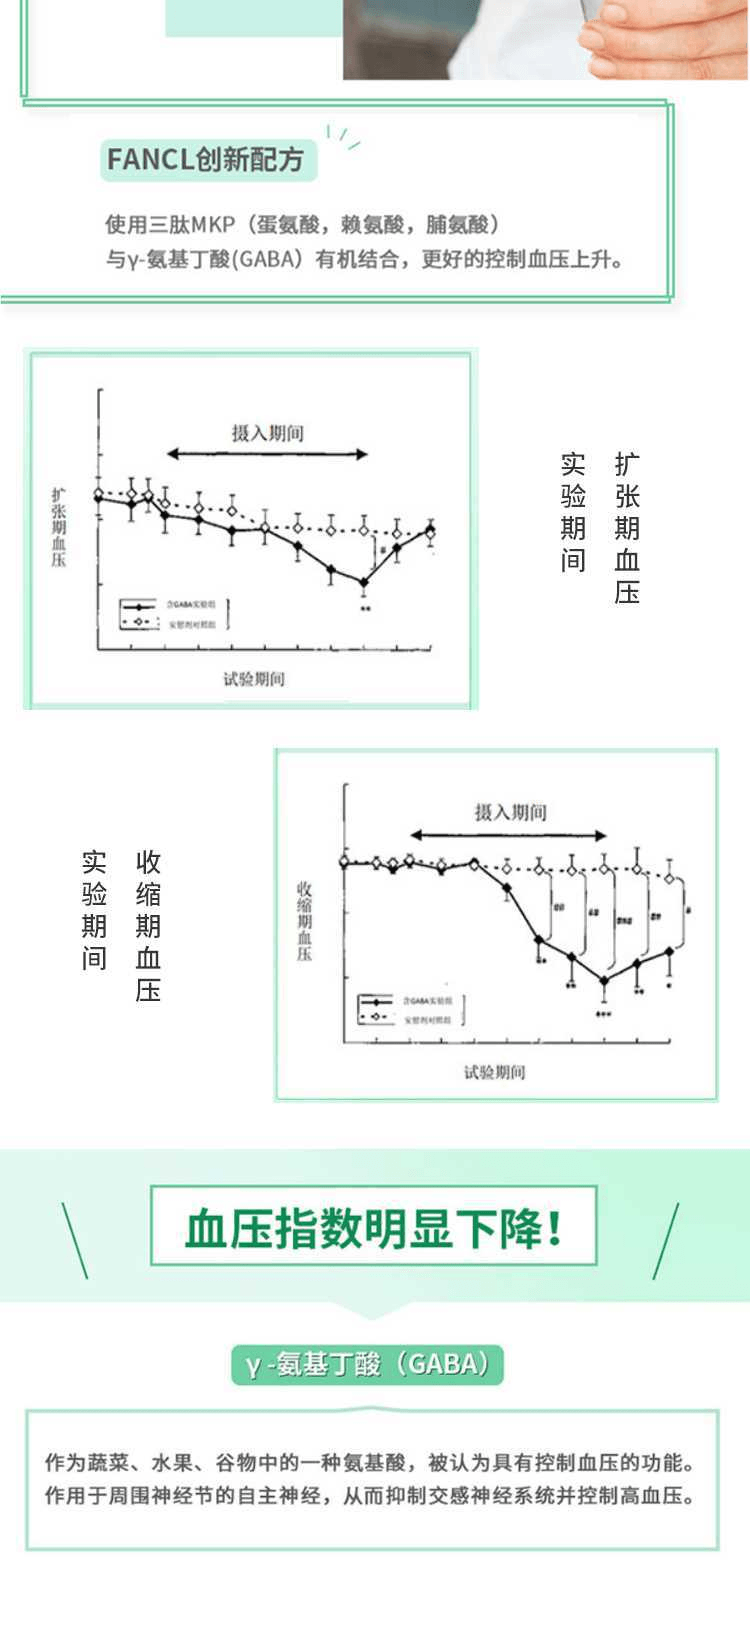 【日本直邮】FANCL芳珂 降低血压营养素 90片/30天量